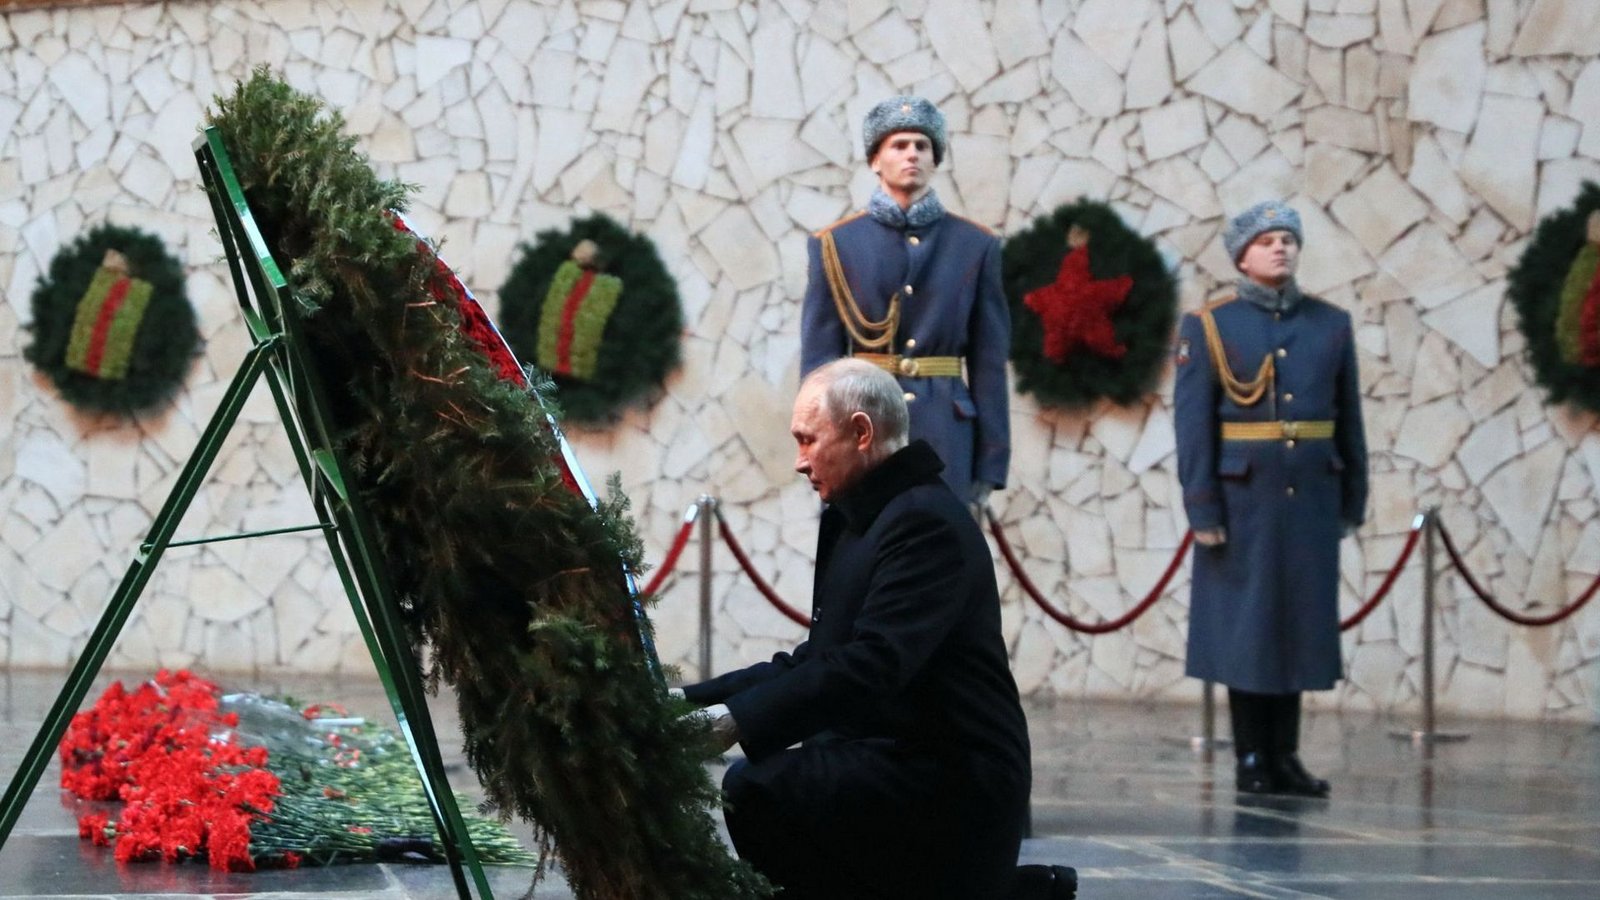 Wladimir bei der Kranzniederlegung in WolgogradFoto: AFP/DMITRY LOBAKIN